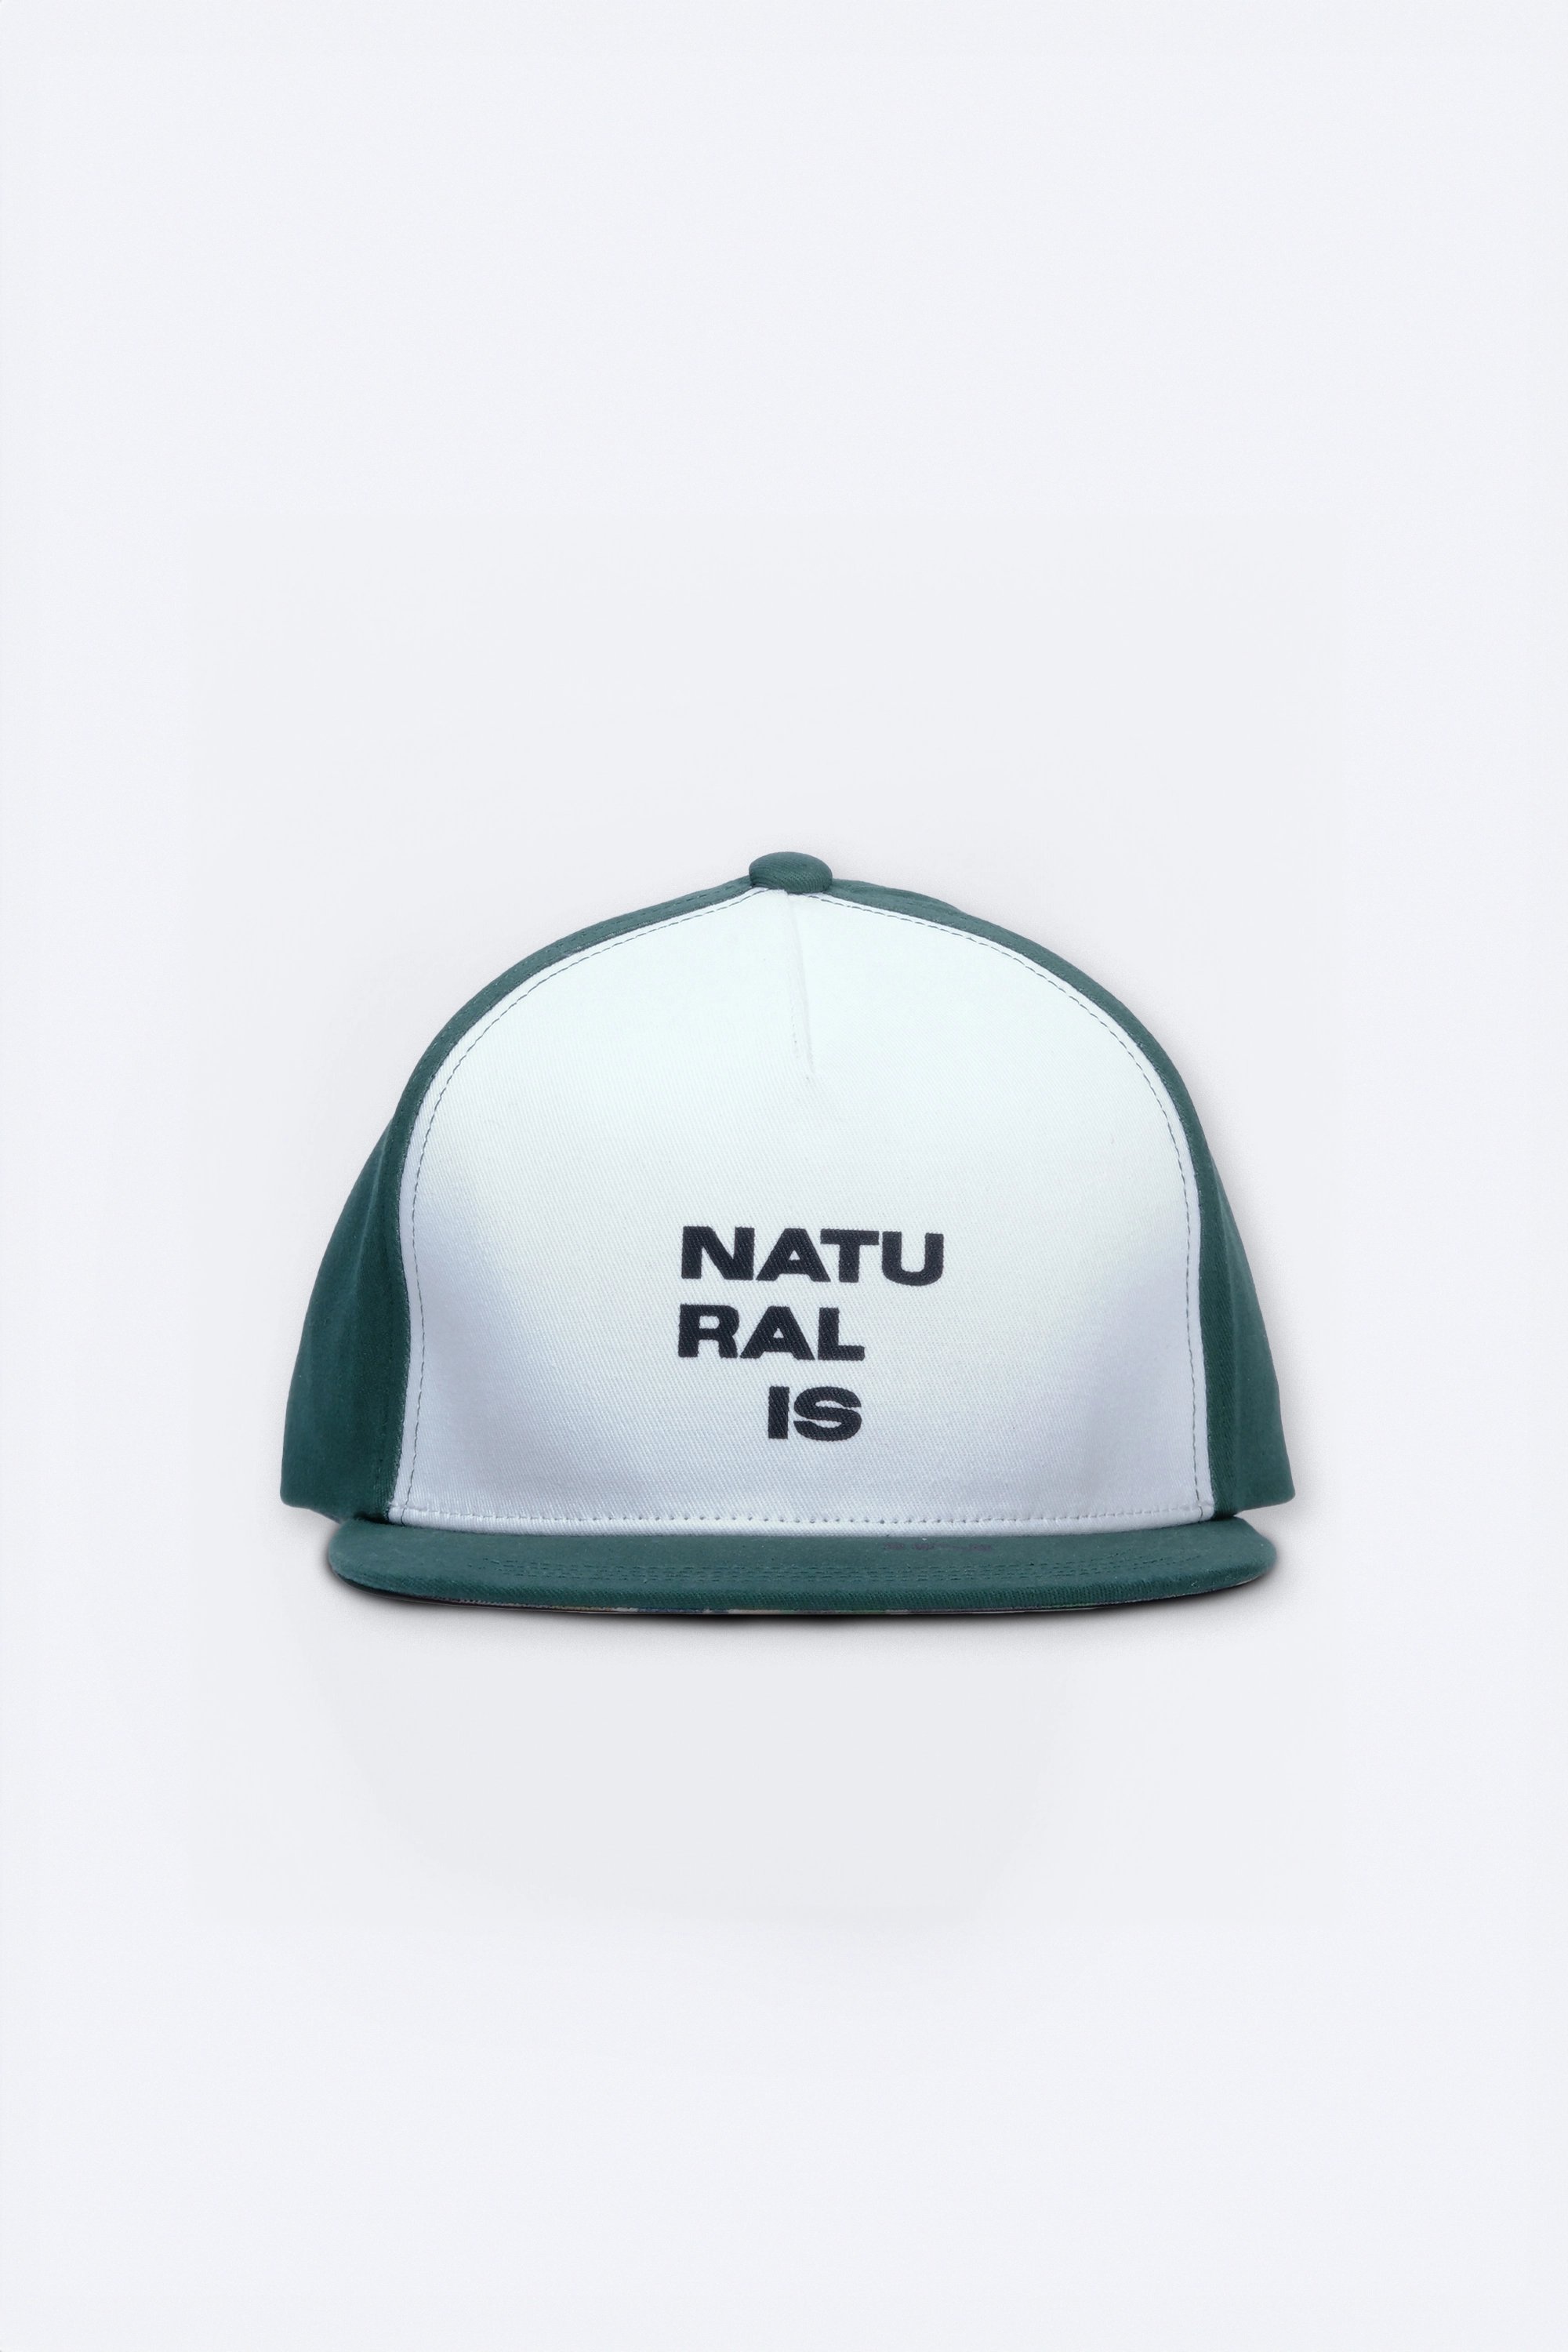 Mato Pamuklu Kova Şapka - Koyu Yeşil